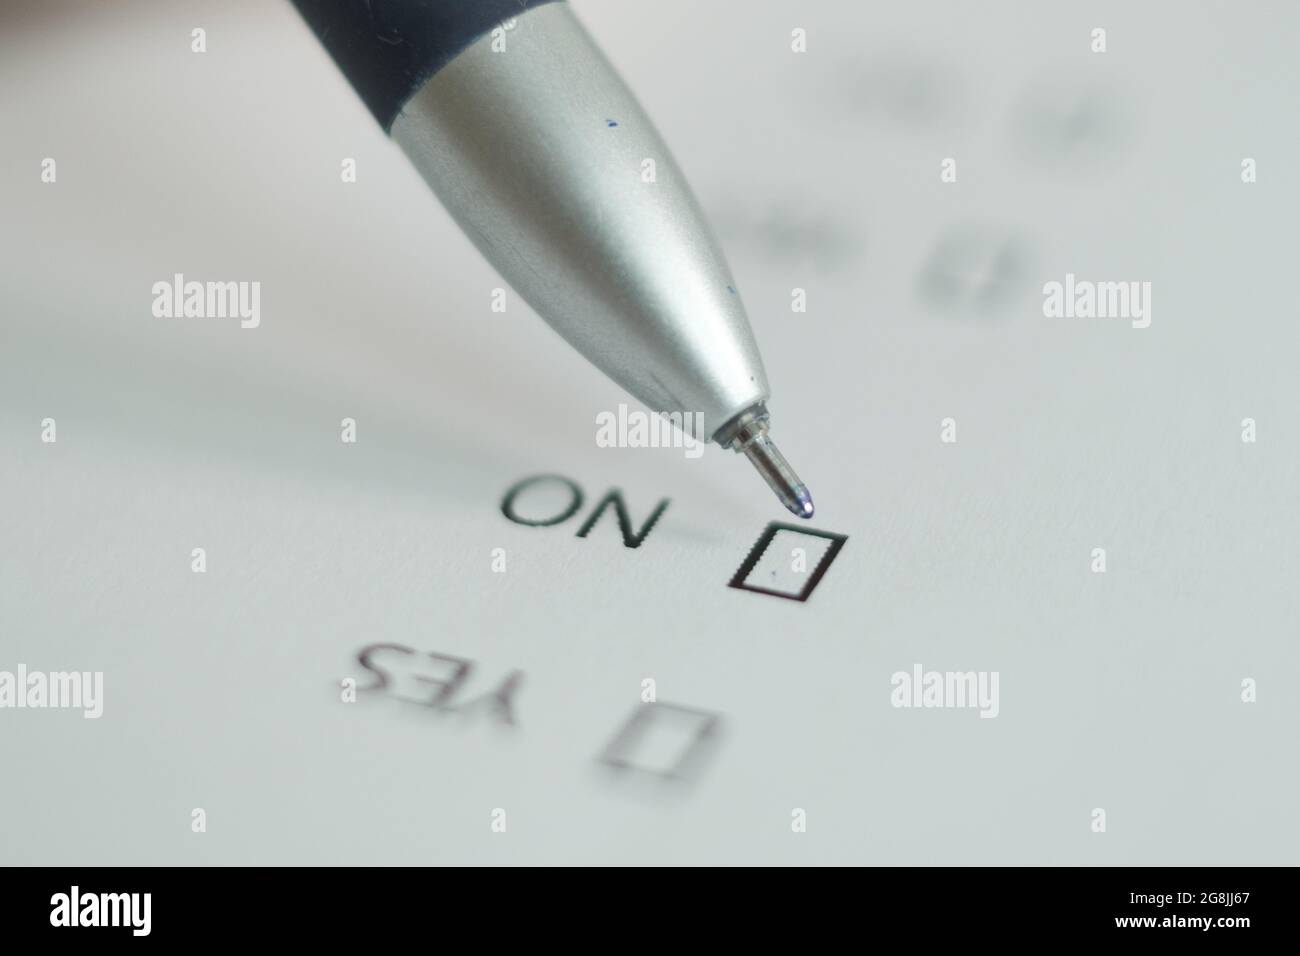 Un foglio bianco del questionario, la risposta 'no' è messa con una penna. Immagine sfocata. Foto Stock